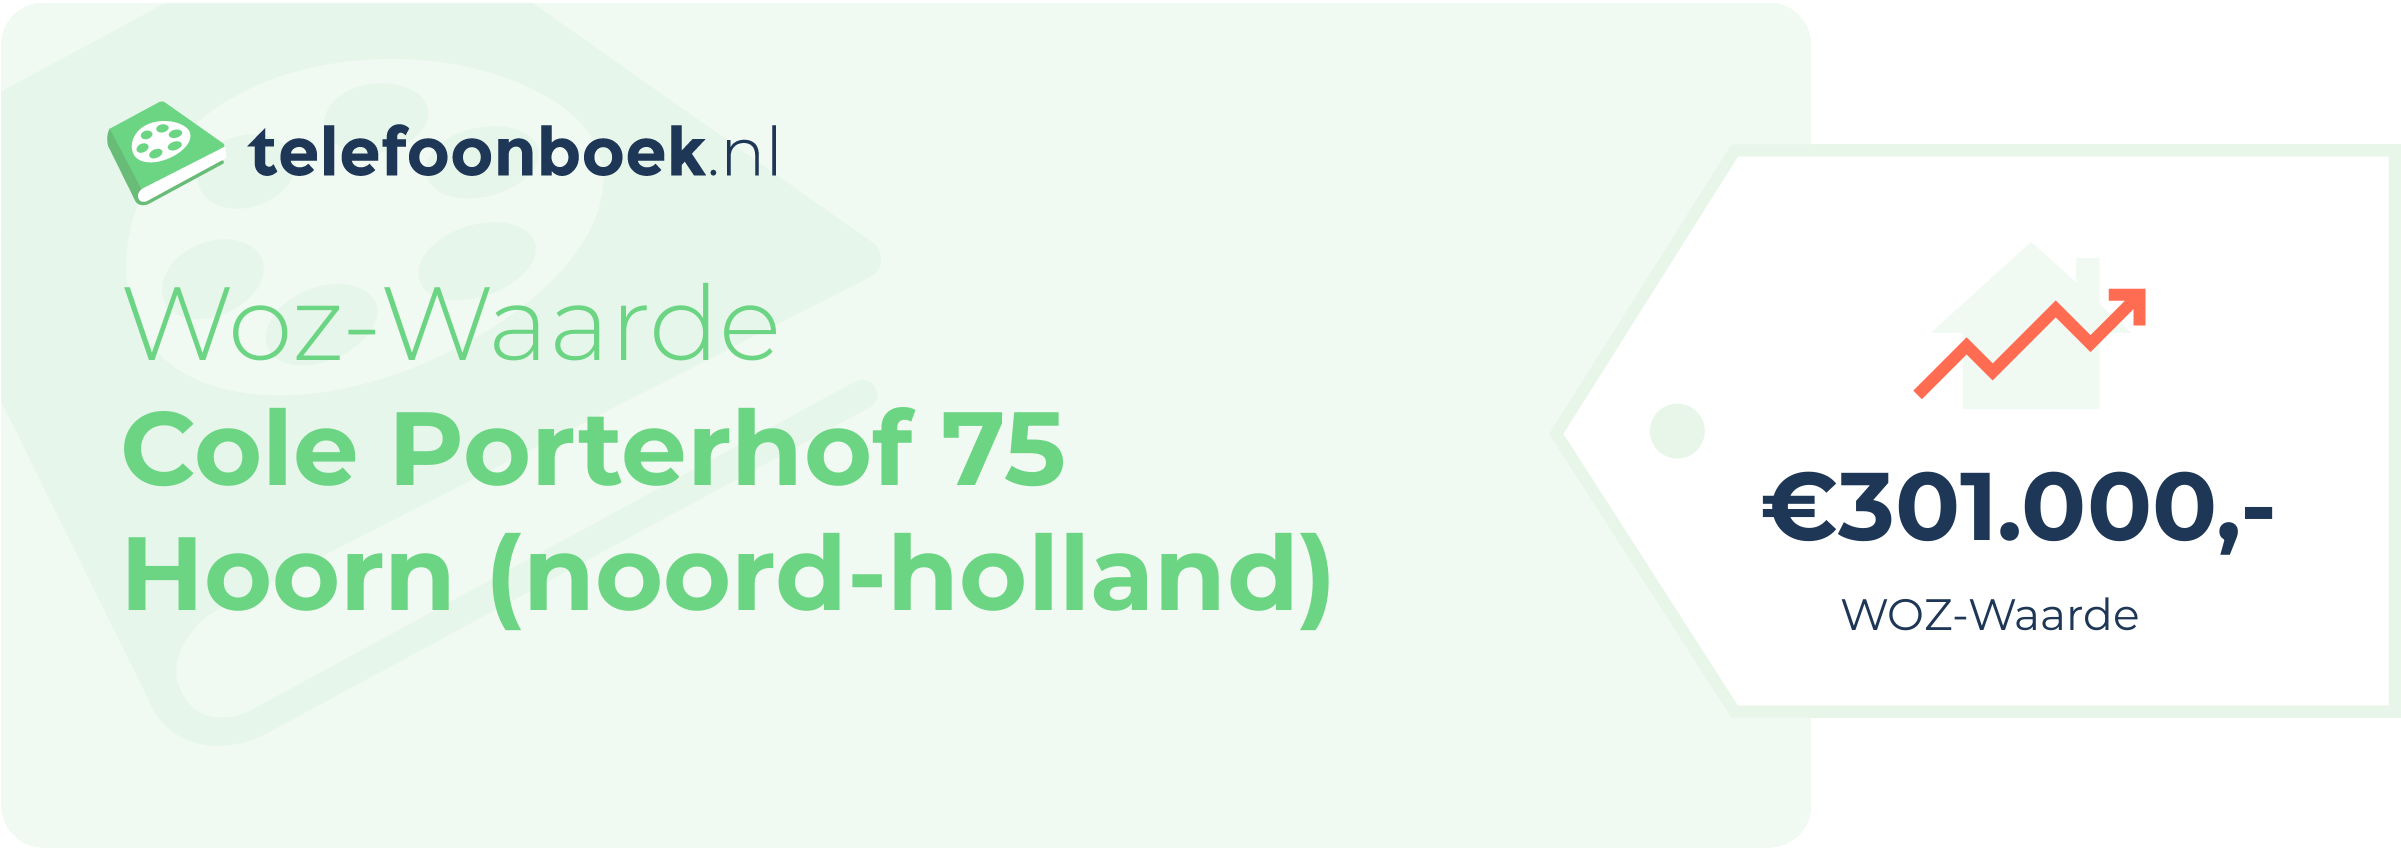 WOZ-waarde Cole Porterhof 75 Hoorn (Noord-Holland)